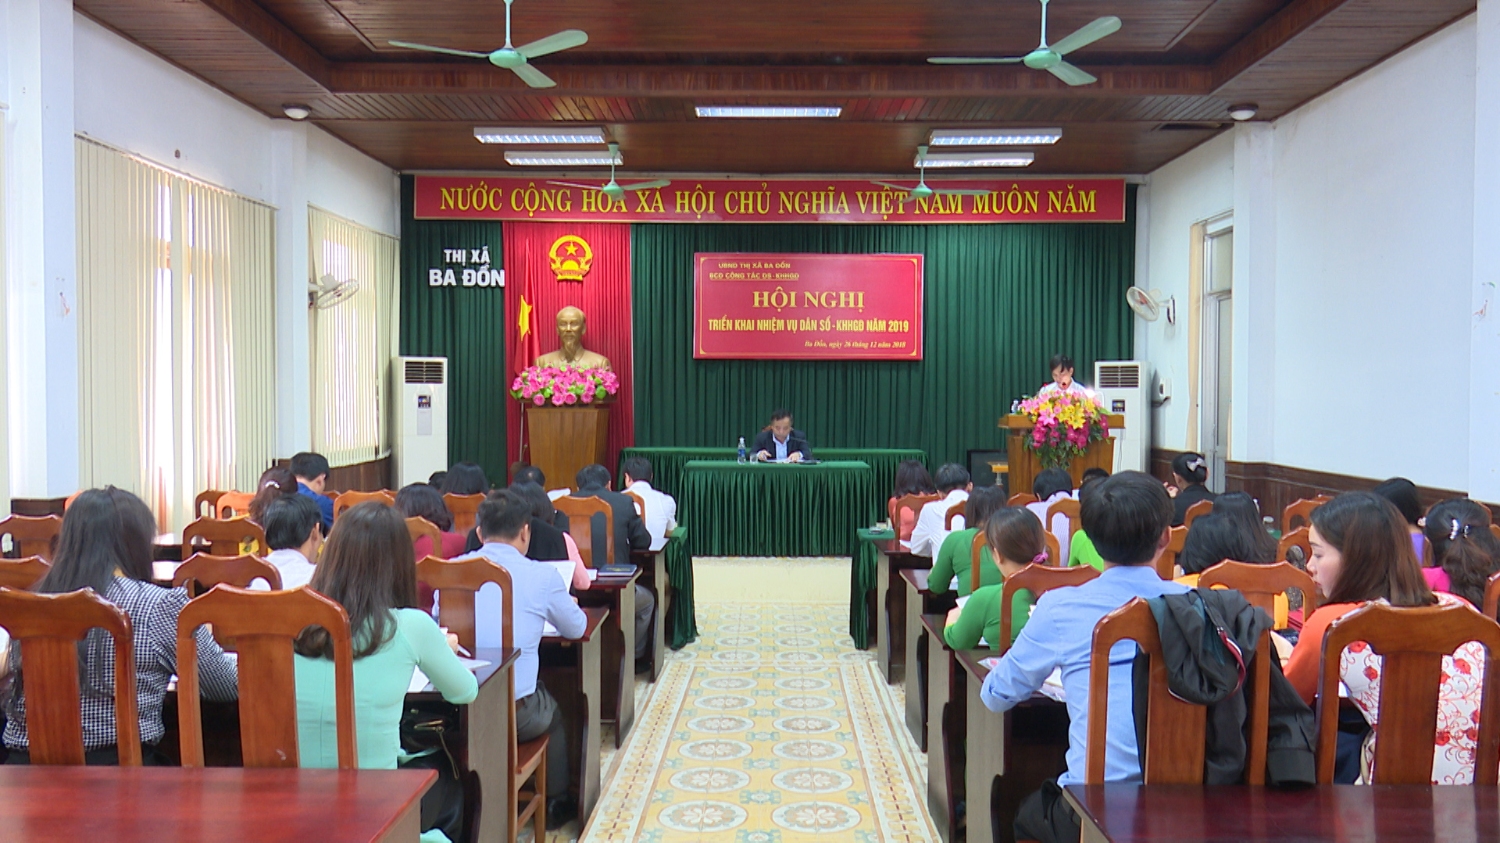 Thị xã Ba Đồn: Hội nghị tổng kết công tác Dân số - Kế hoạch hóa gia đình  năm 2018